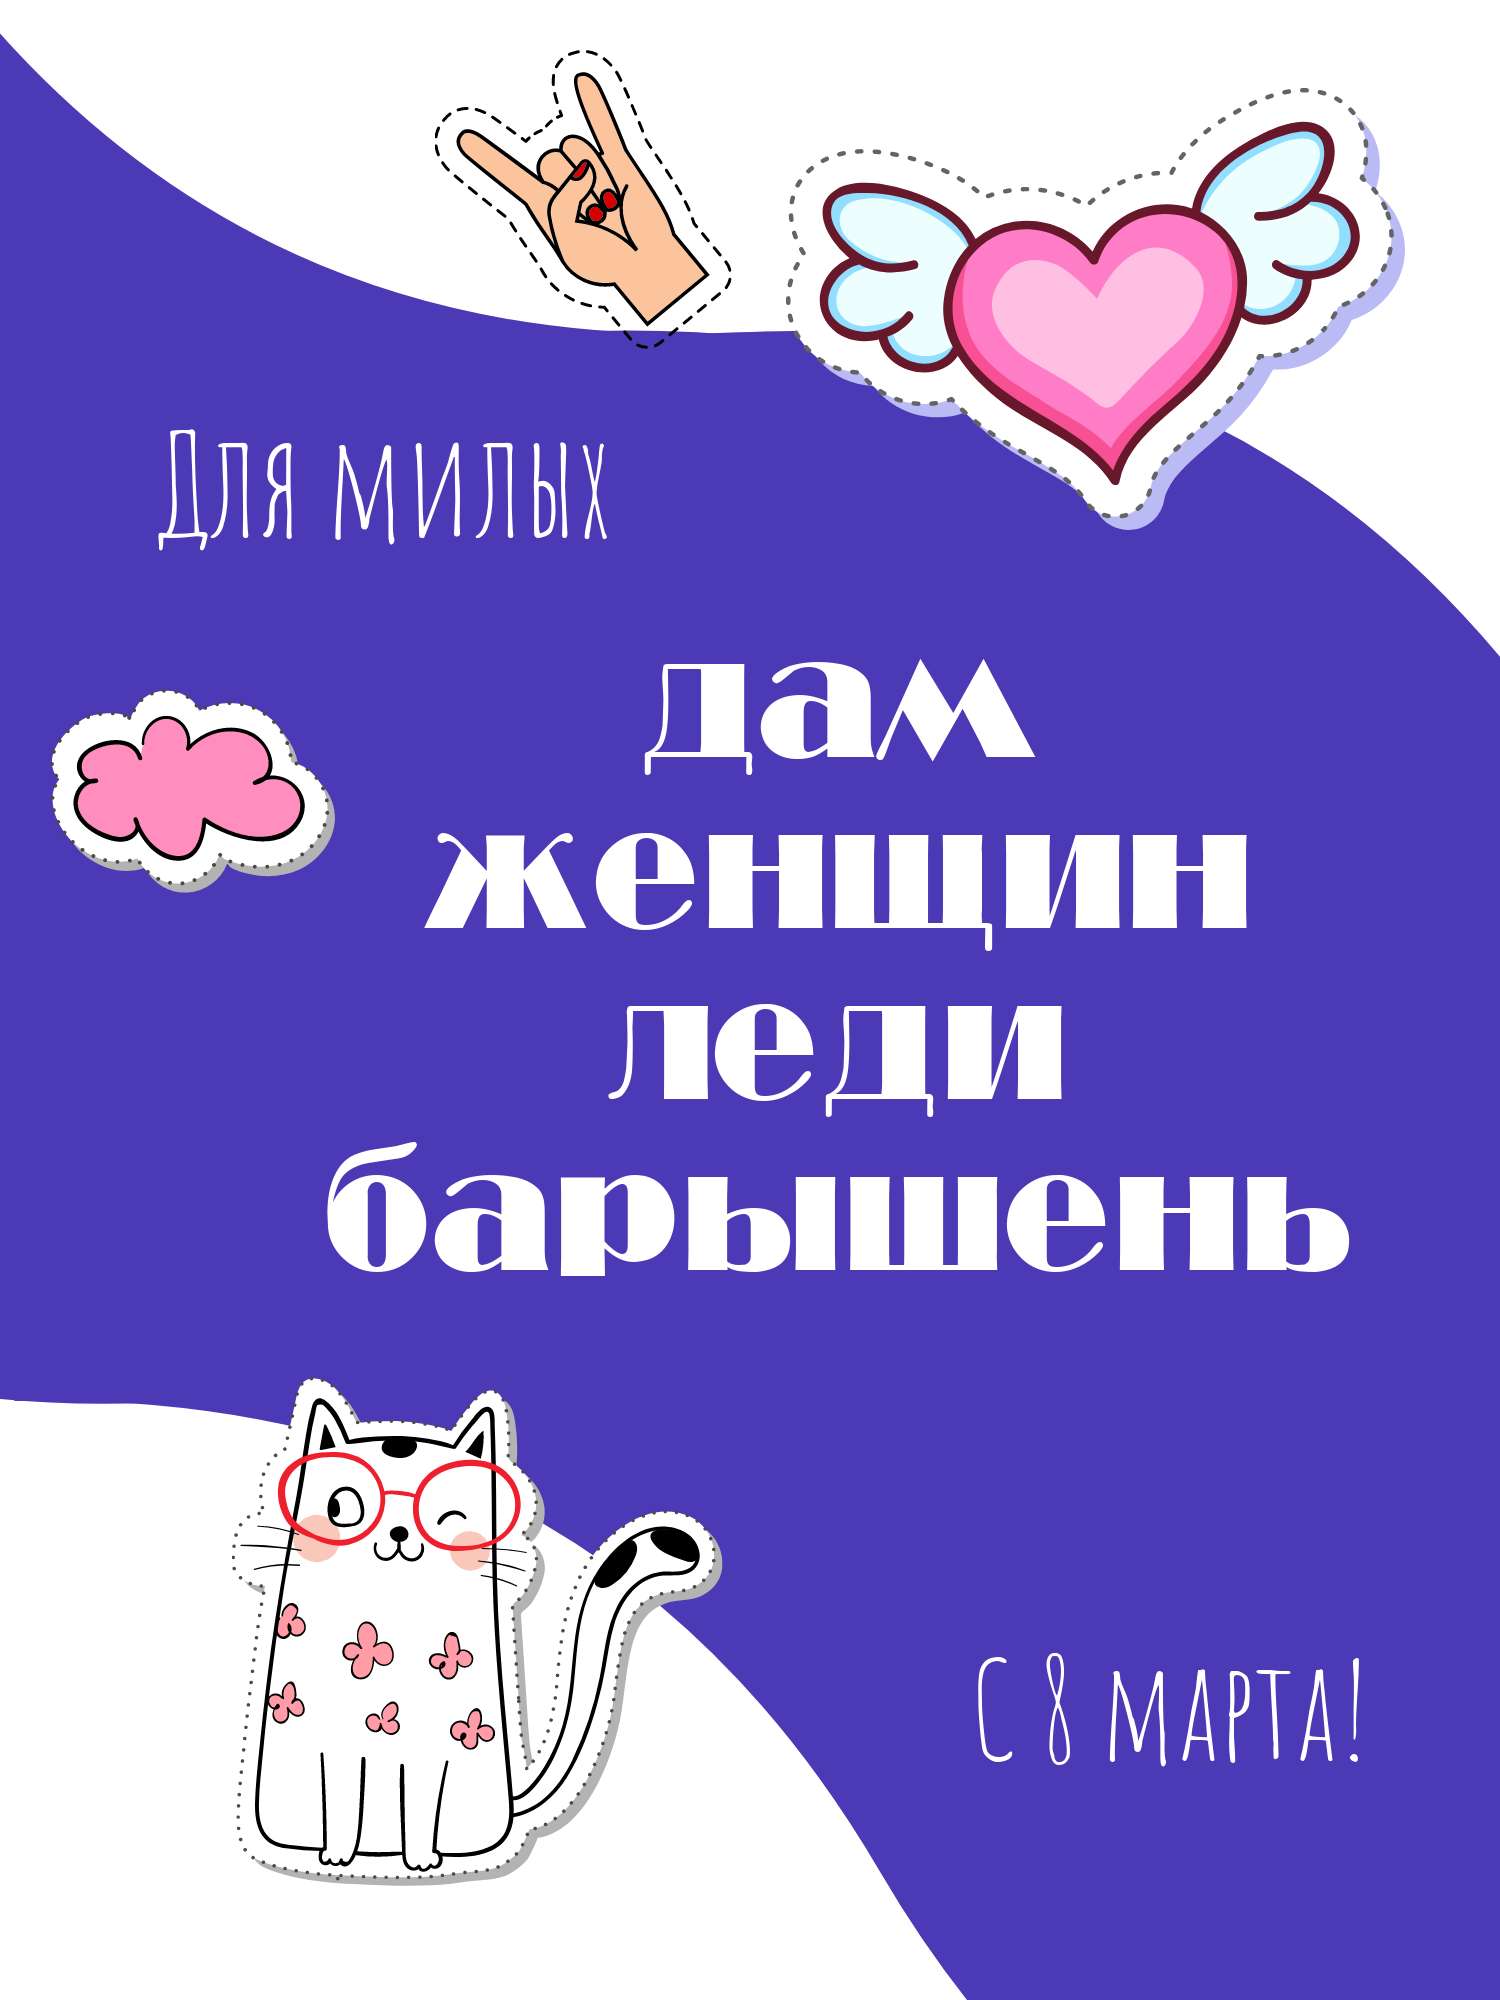 Открытка в день 8 марта со стикерами котиком и поздравительным текстом